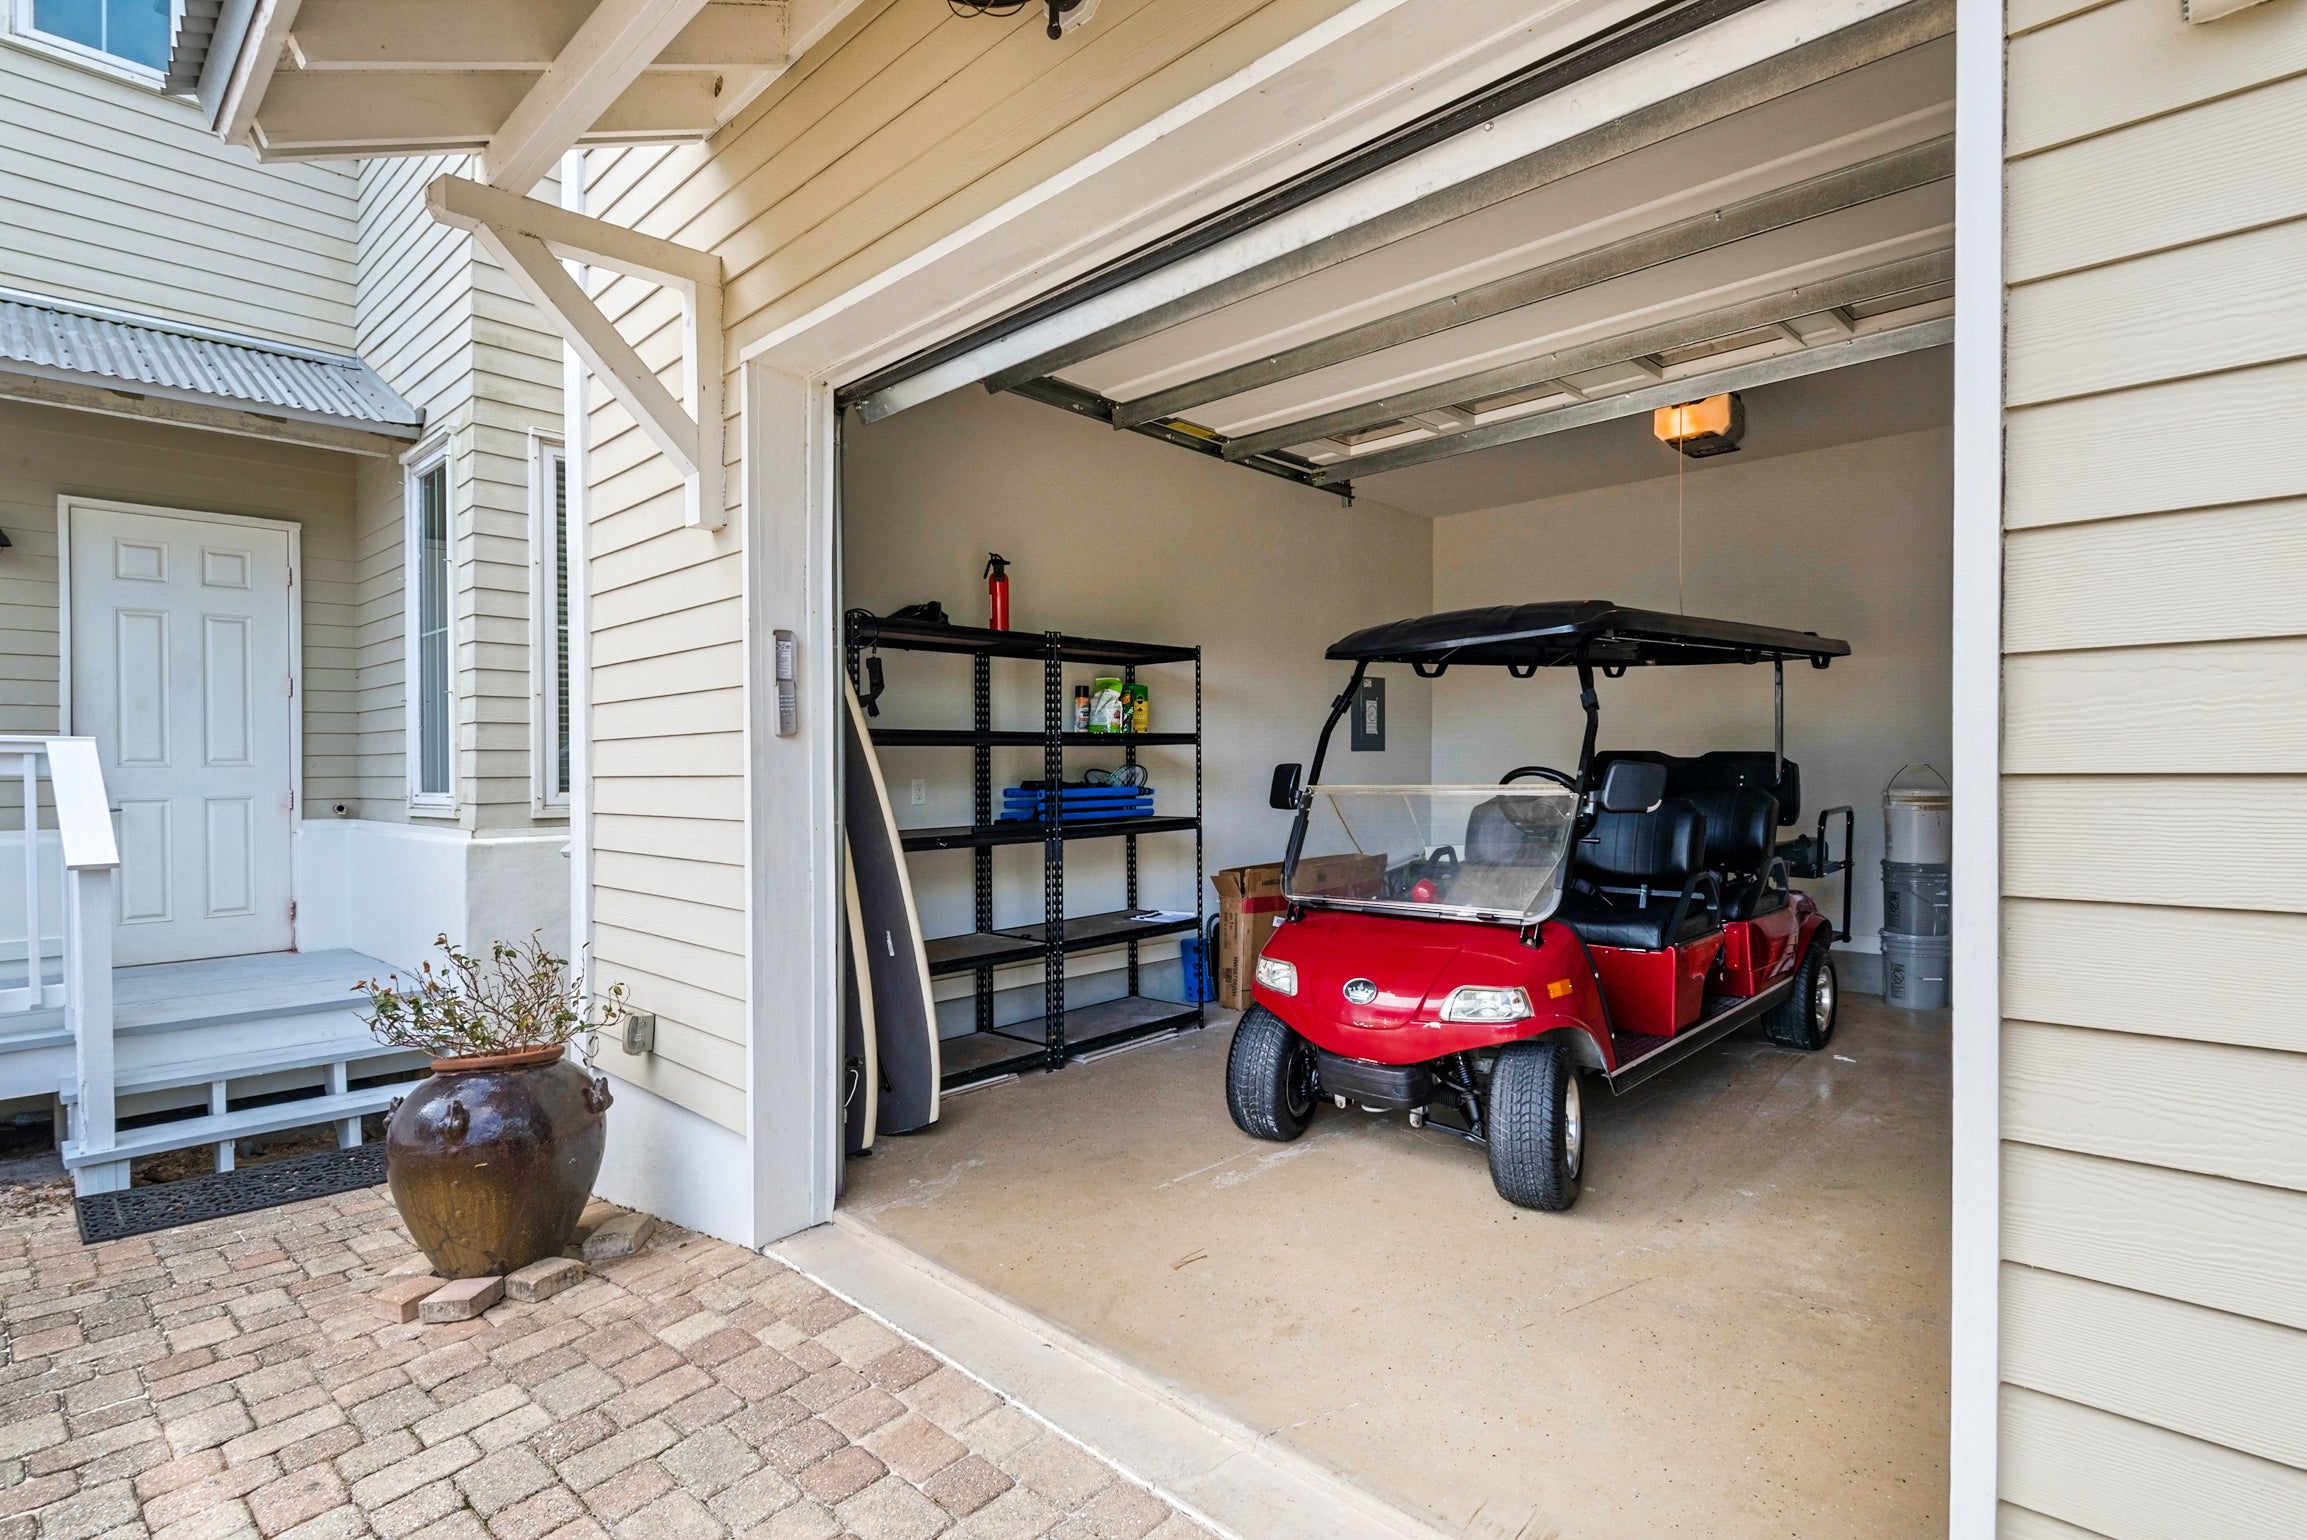 Golf cart in the garage